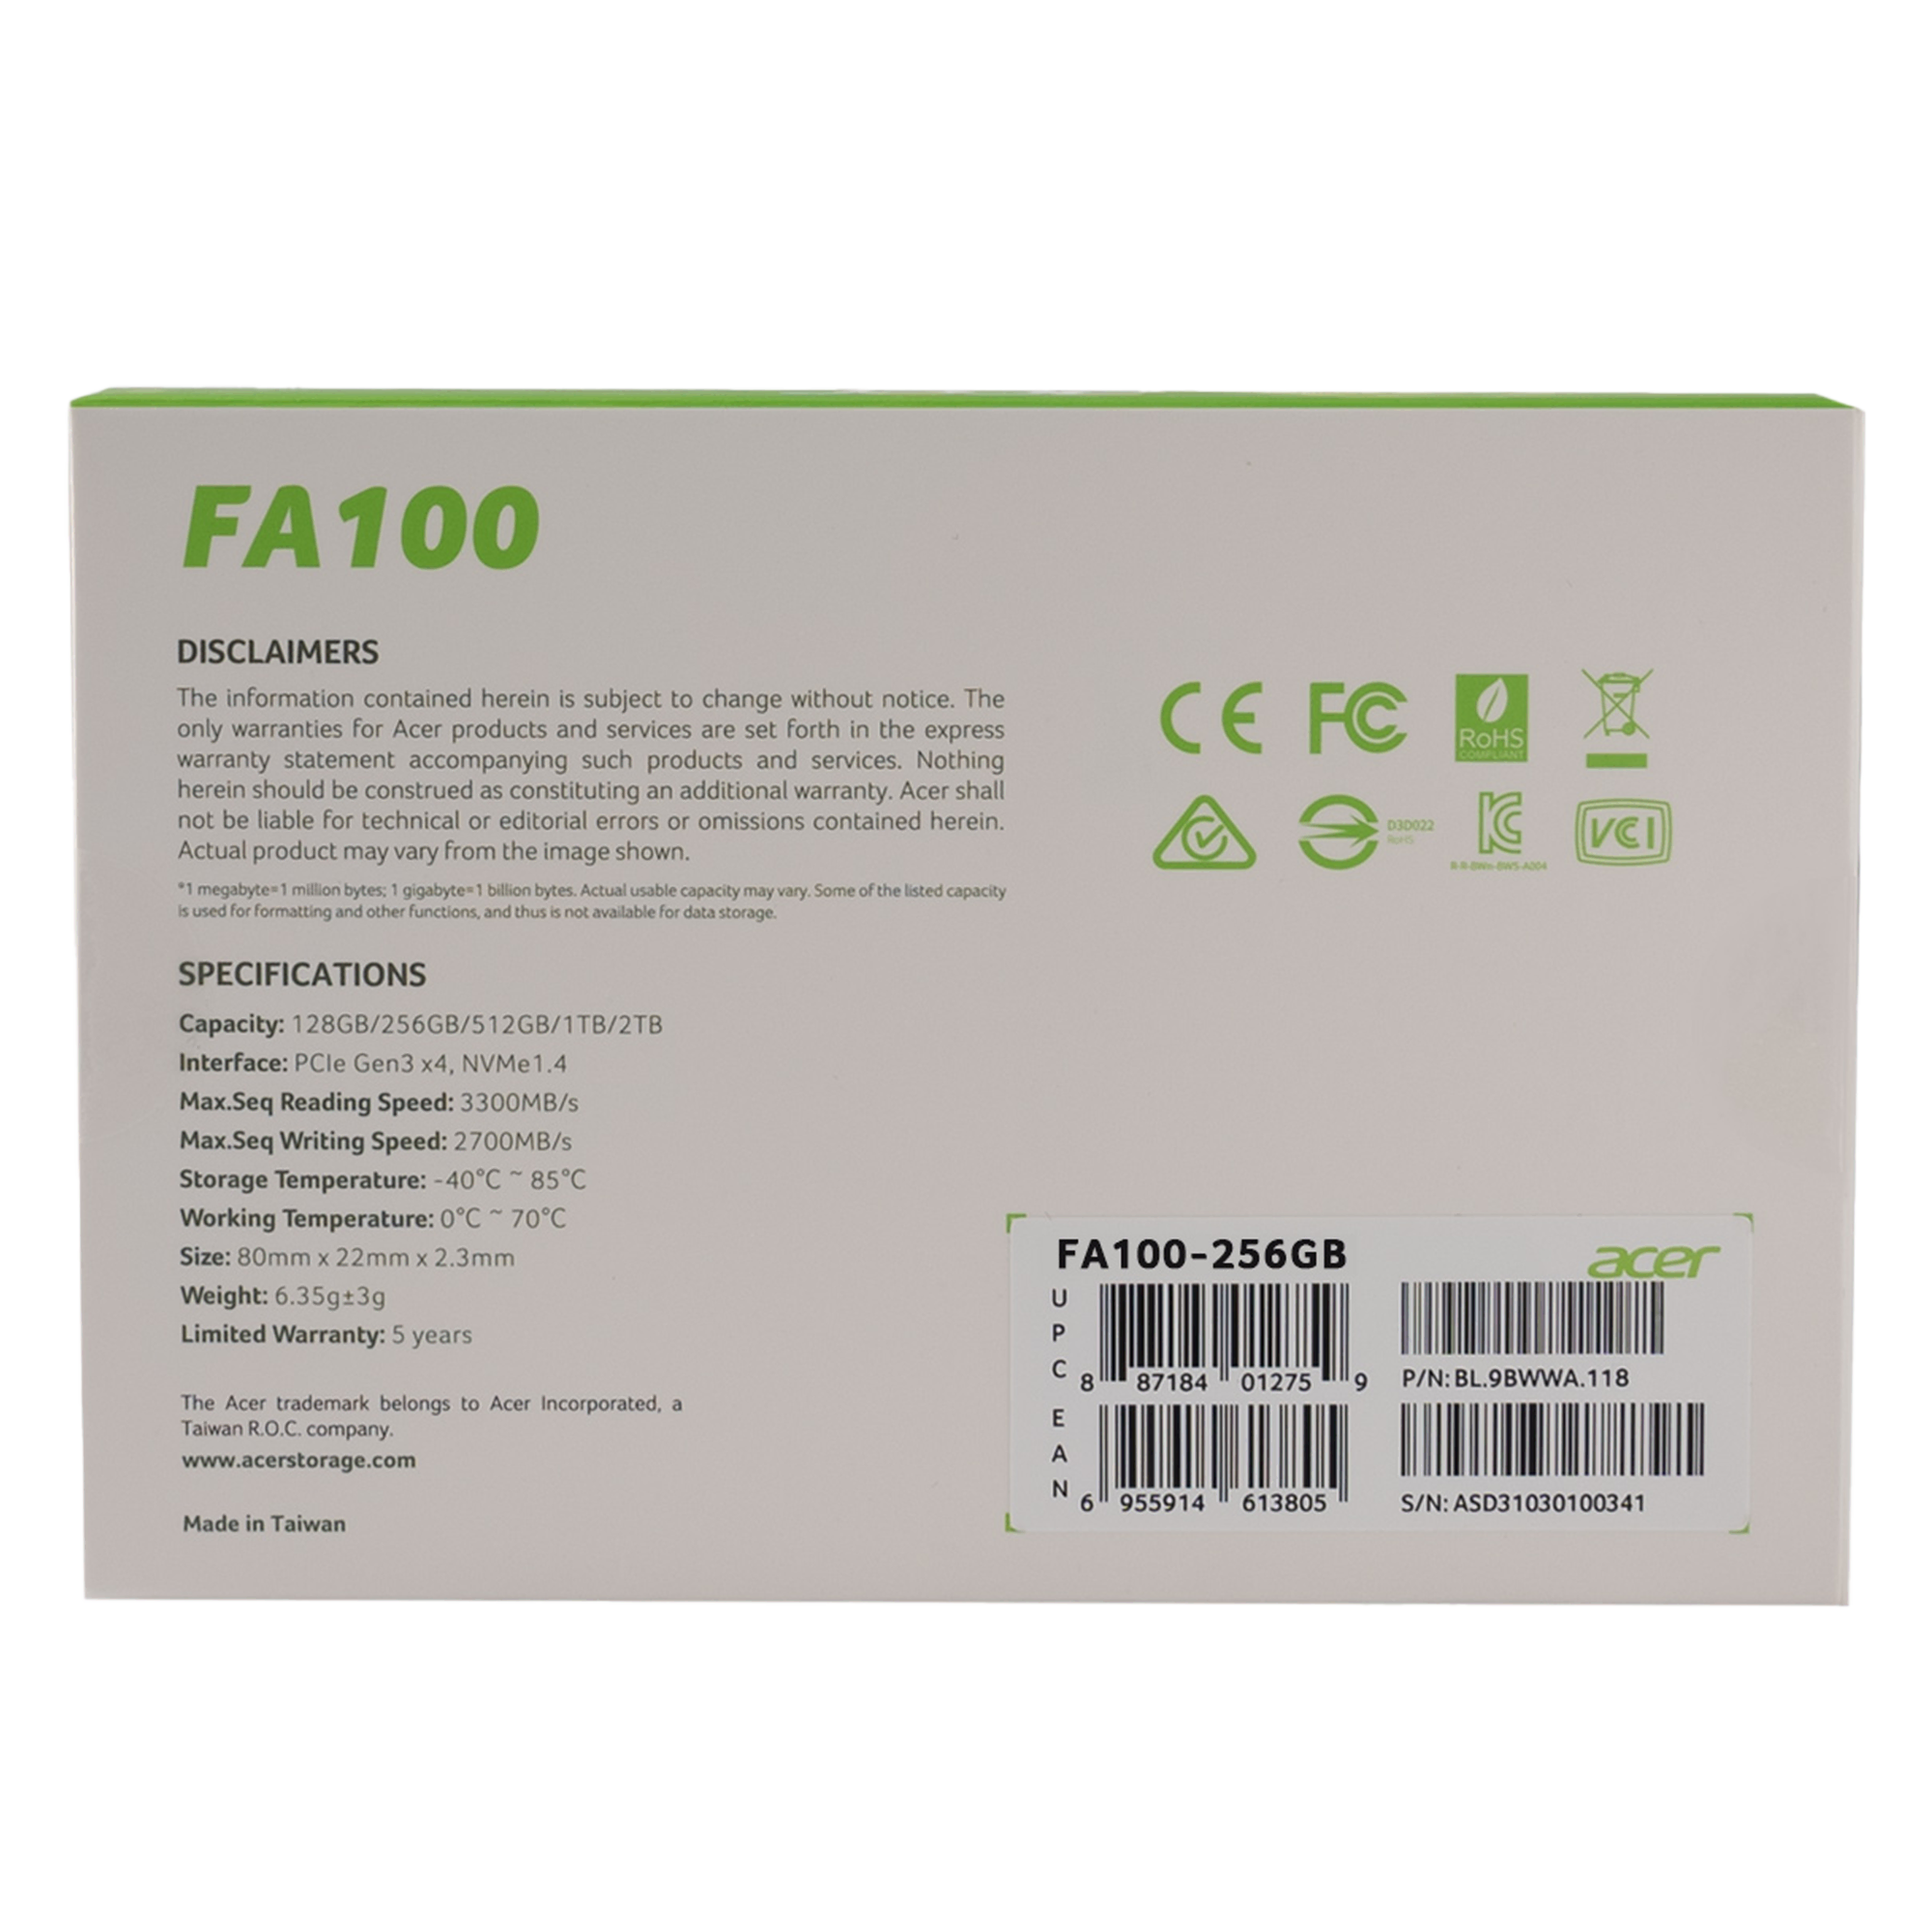 Acer FA100 PCIe NVMe 256GB Bilgisayar Çevre Birimleri